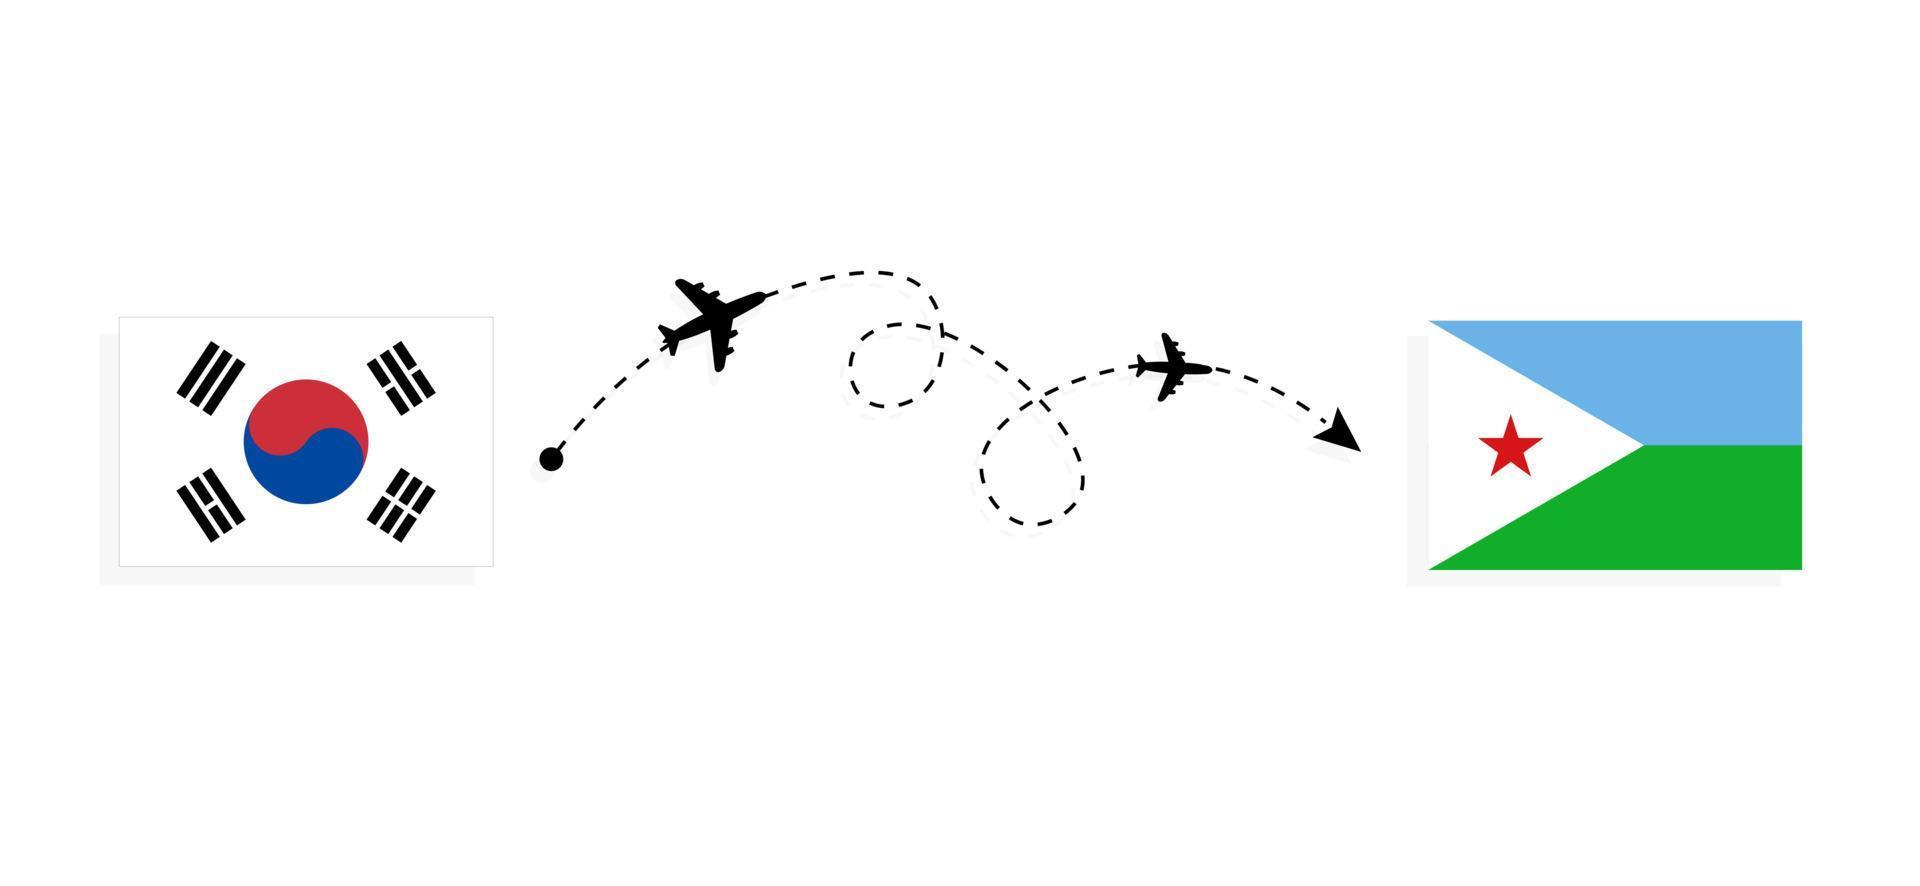 vol et voyage de la corée du sud à djibouti par concept de voyage en avion de passagers vecteur